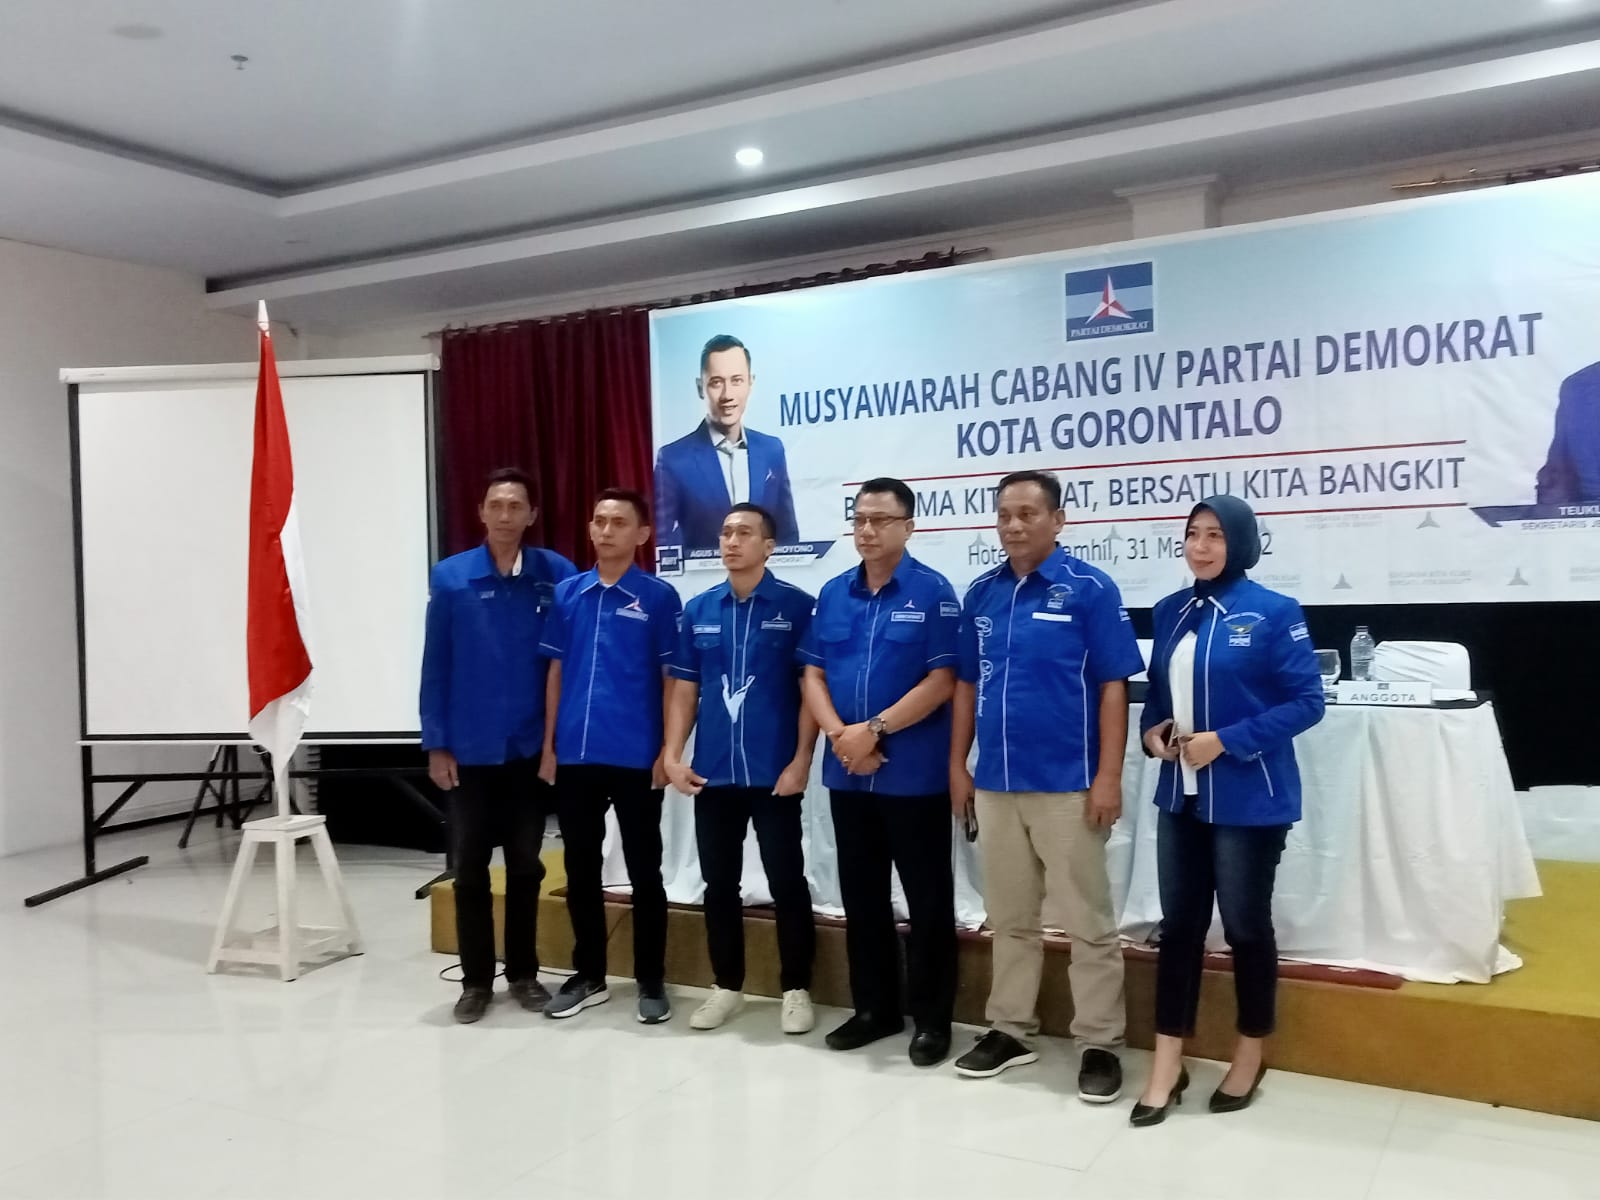 Muscab IV Partai Demokrat hasilkan Ermant Latjengke sebagai Ketua DPC Kota Gorontalo